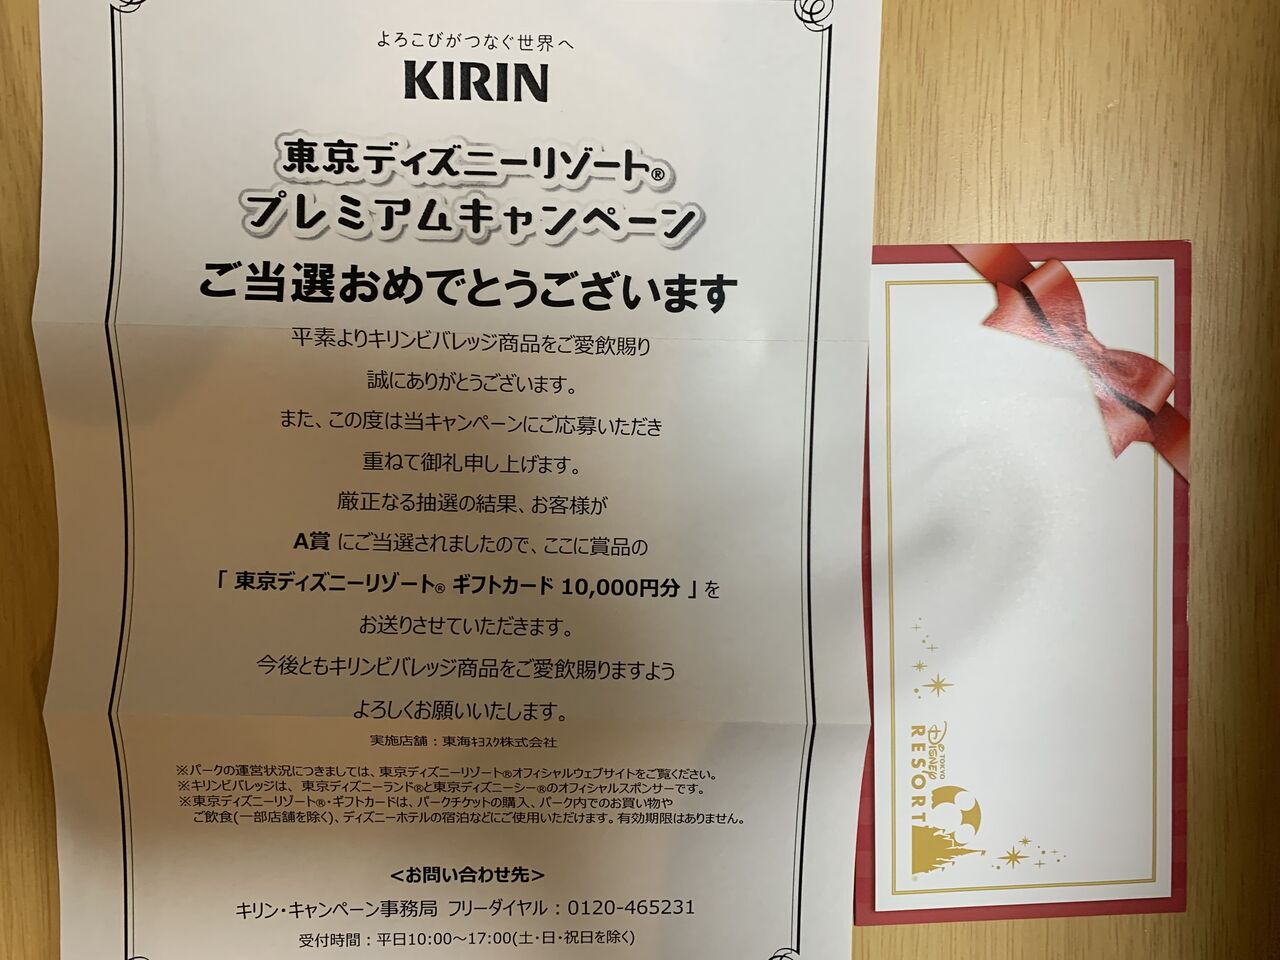 当選報告 東海キヨスク キリンのキャンペーンで 東京ディズニーリゾートギフトカード当選 みーばんの懸賞ハマってますブログ